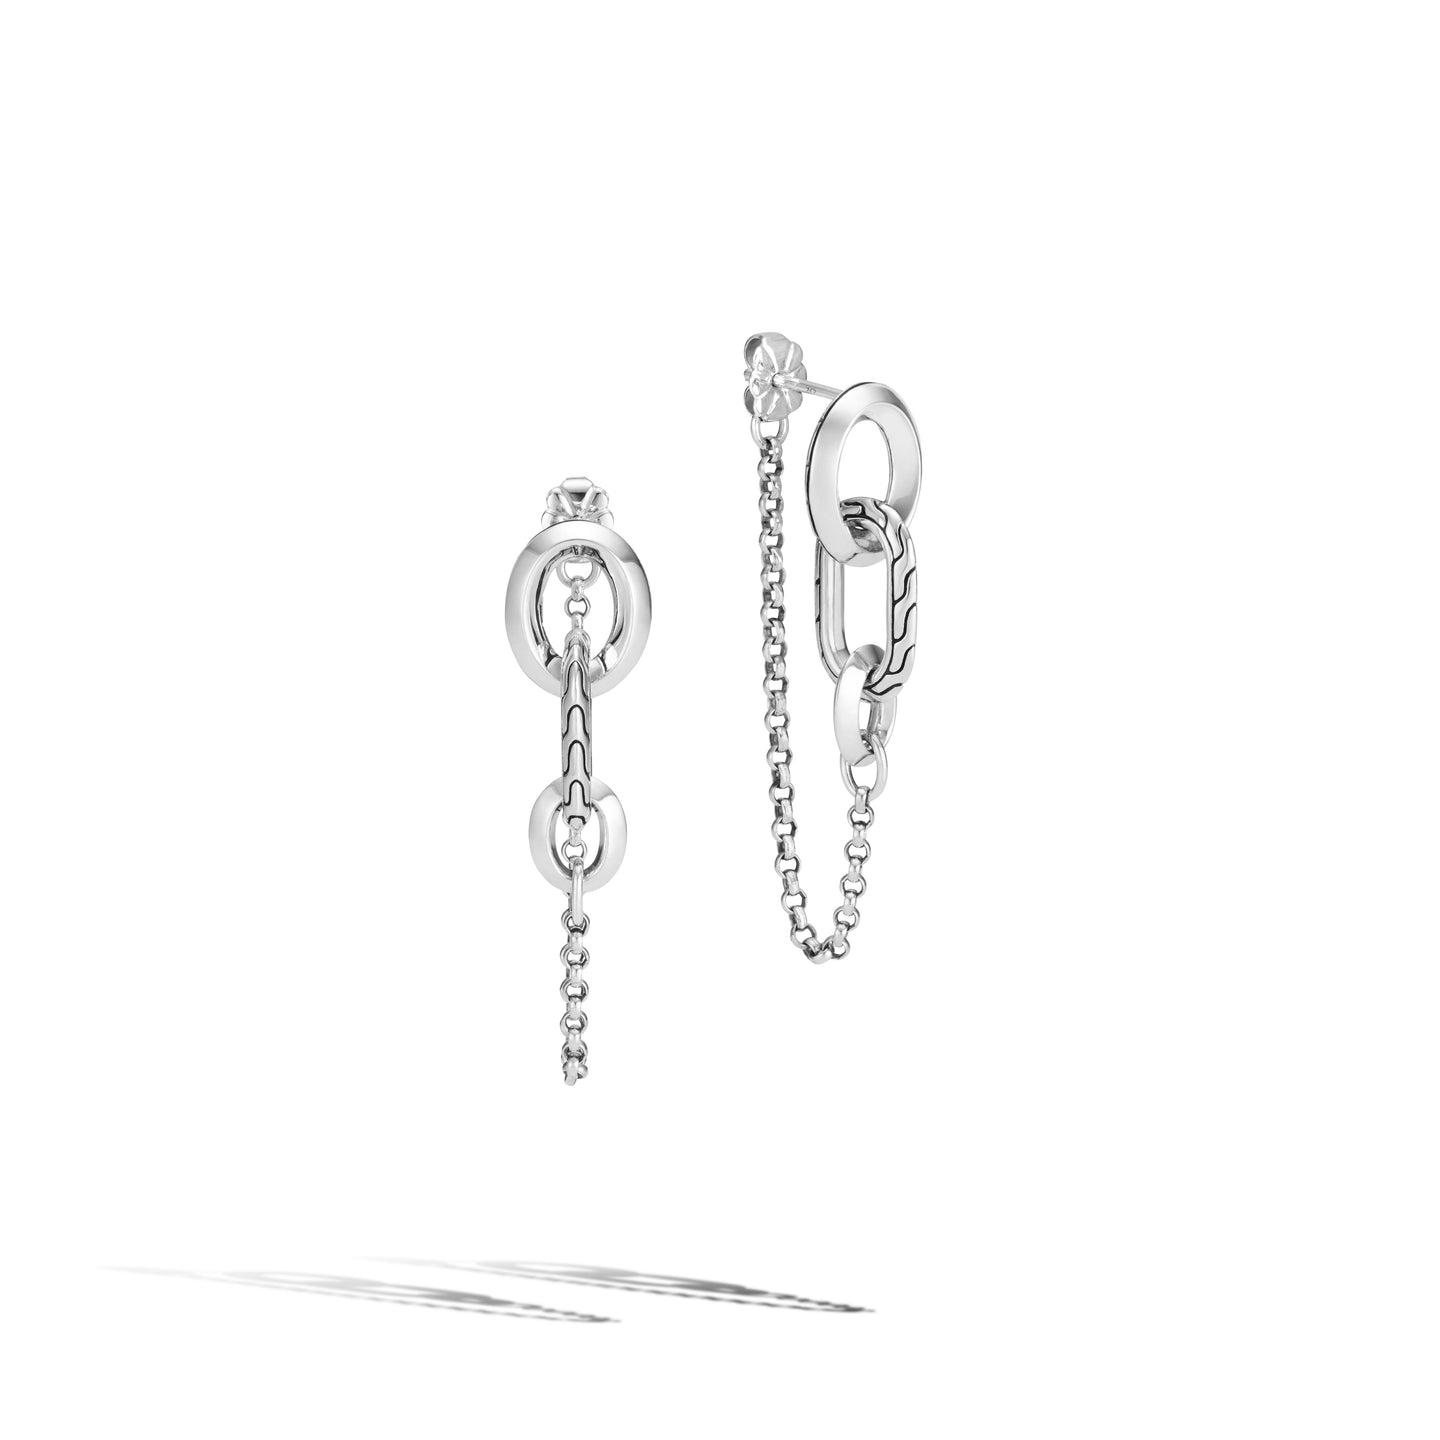 John Hardy Sterling Silver Chain Link Earrings